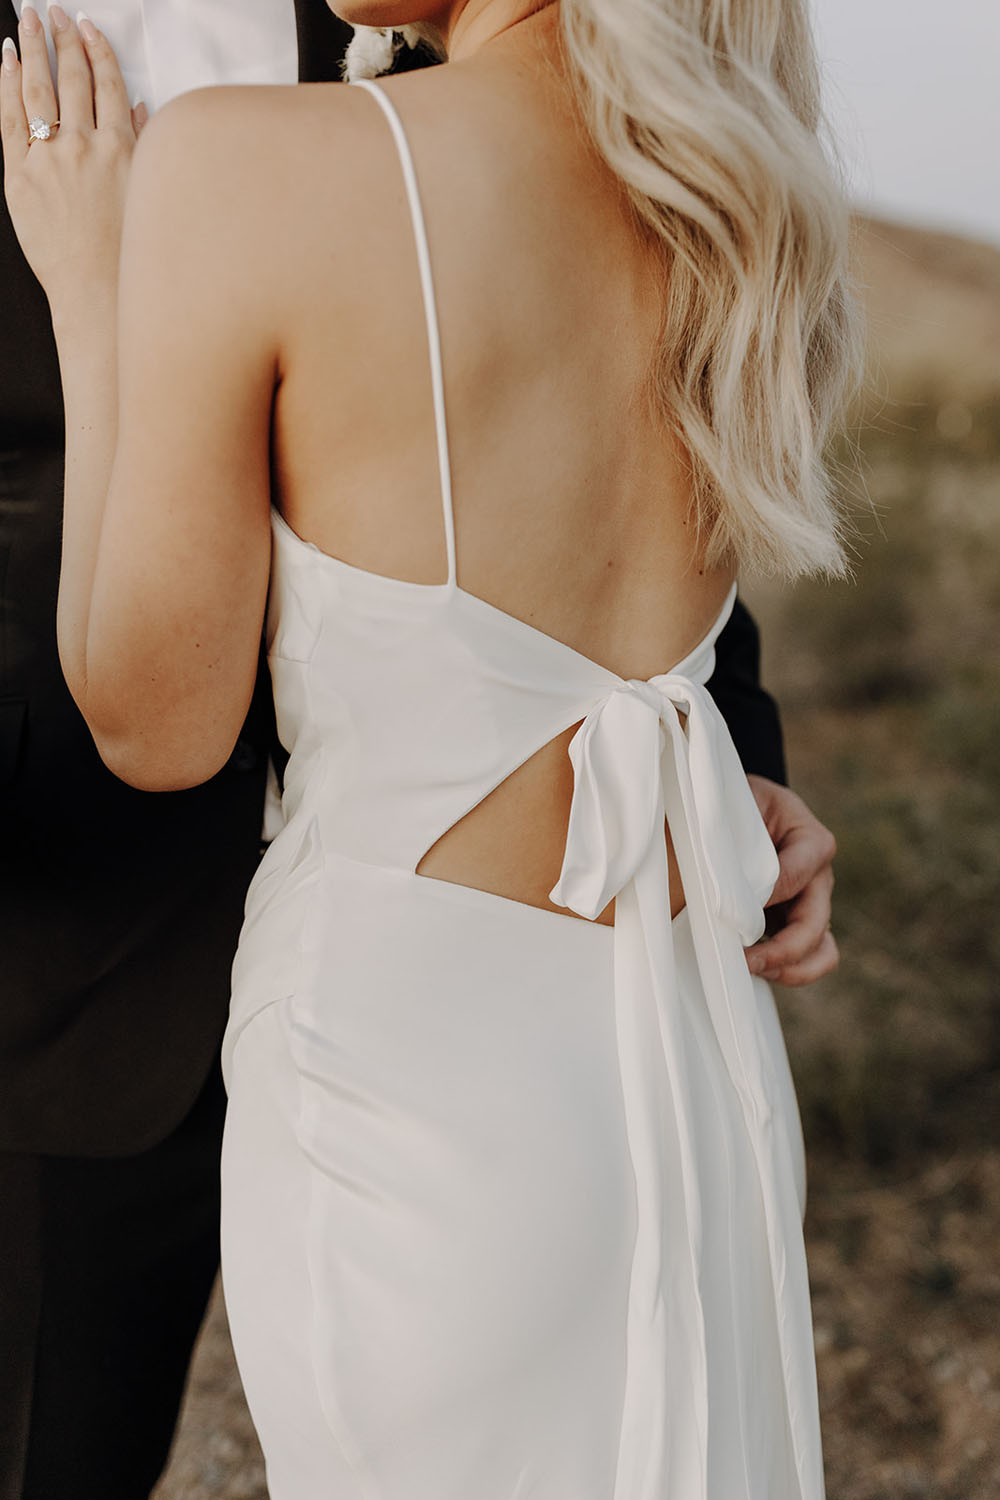 Modern "Meet me in the Desert" black & white wedding ideas